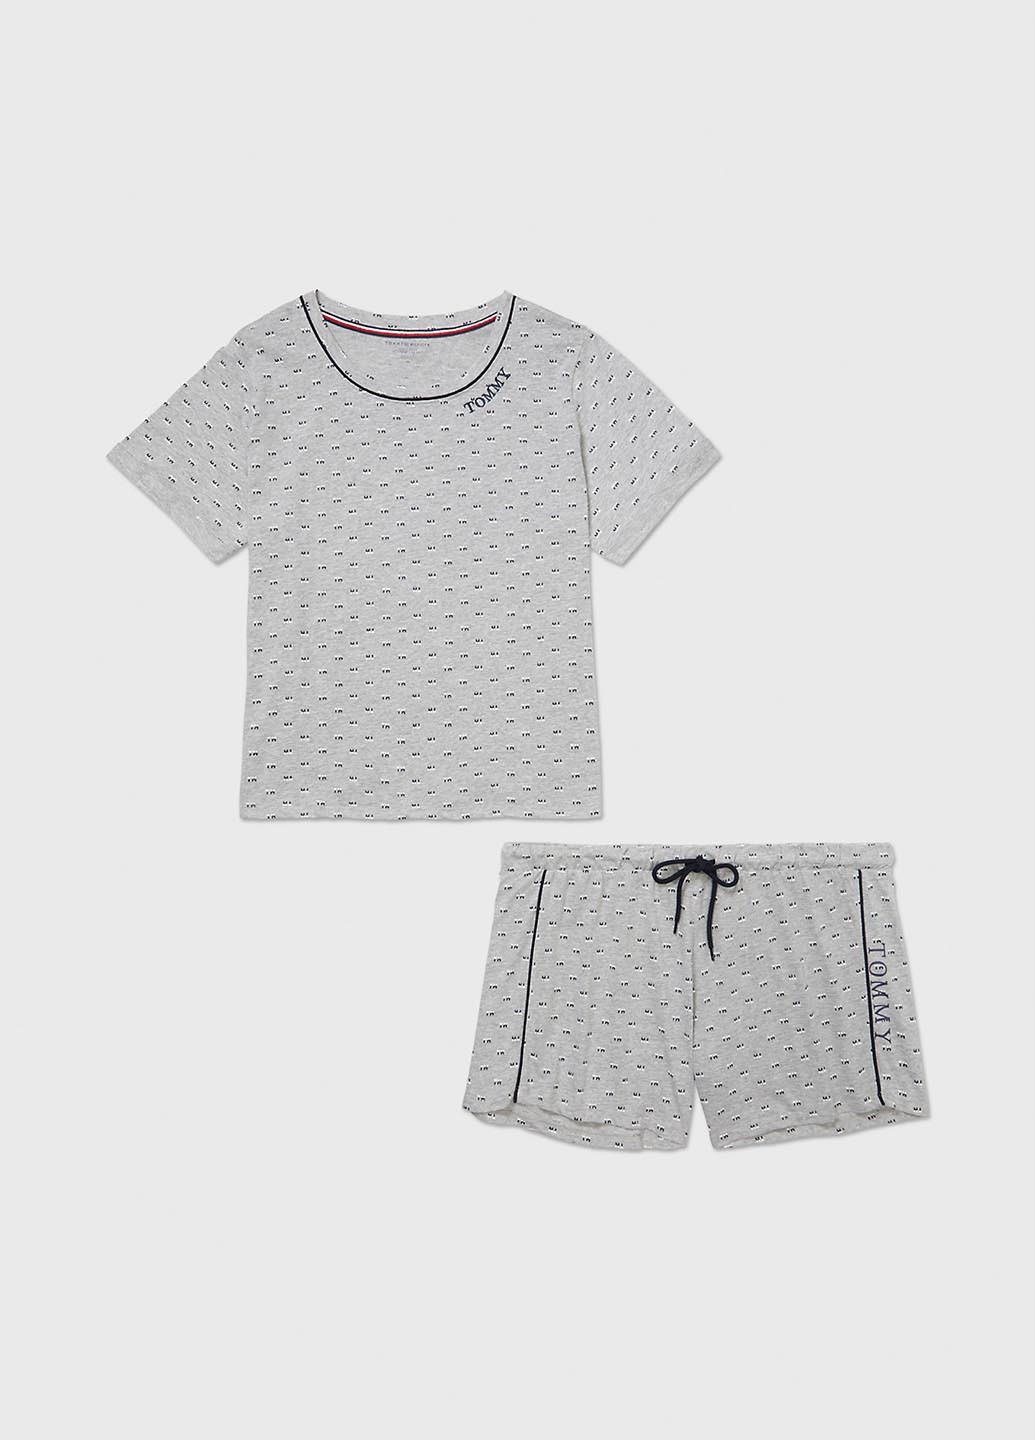 Серая всесезон пижама (футболка, шорты) футболка + шорты Tommy Hilfiger